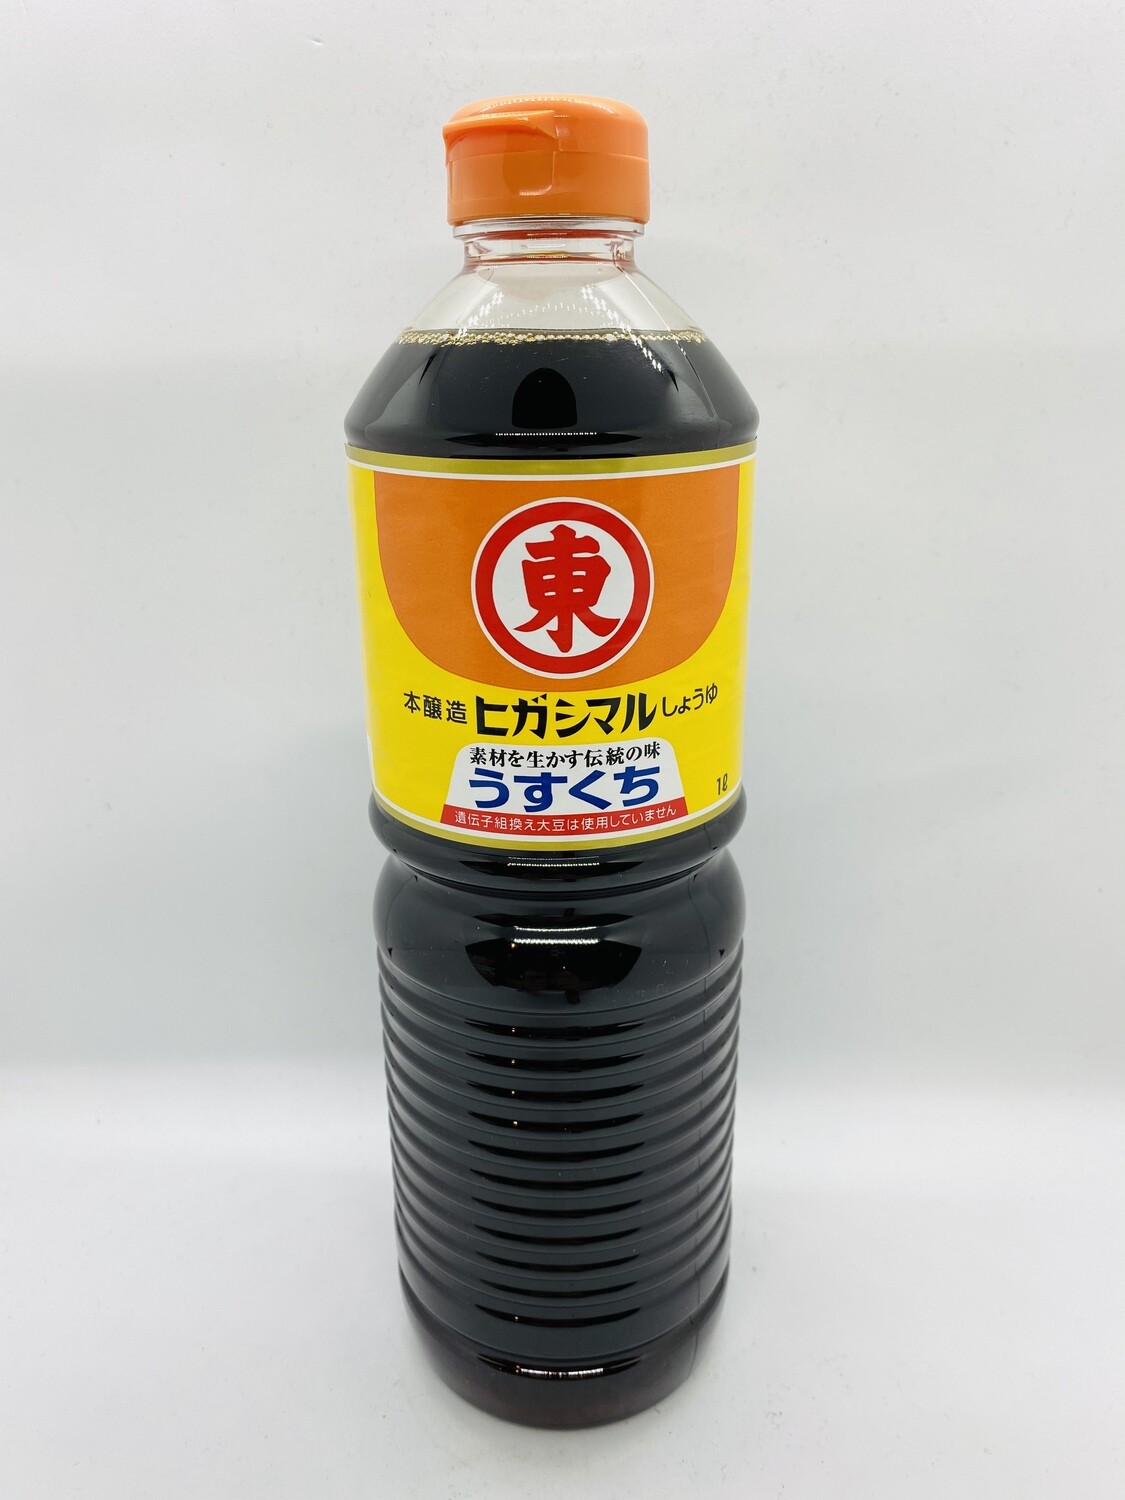 HIGASHIMARU Usukuchi soy sauce